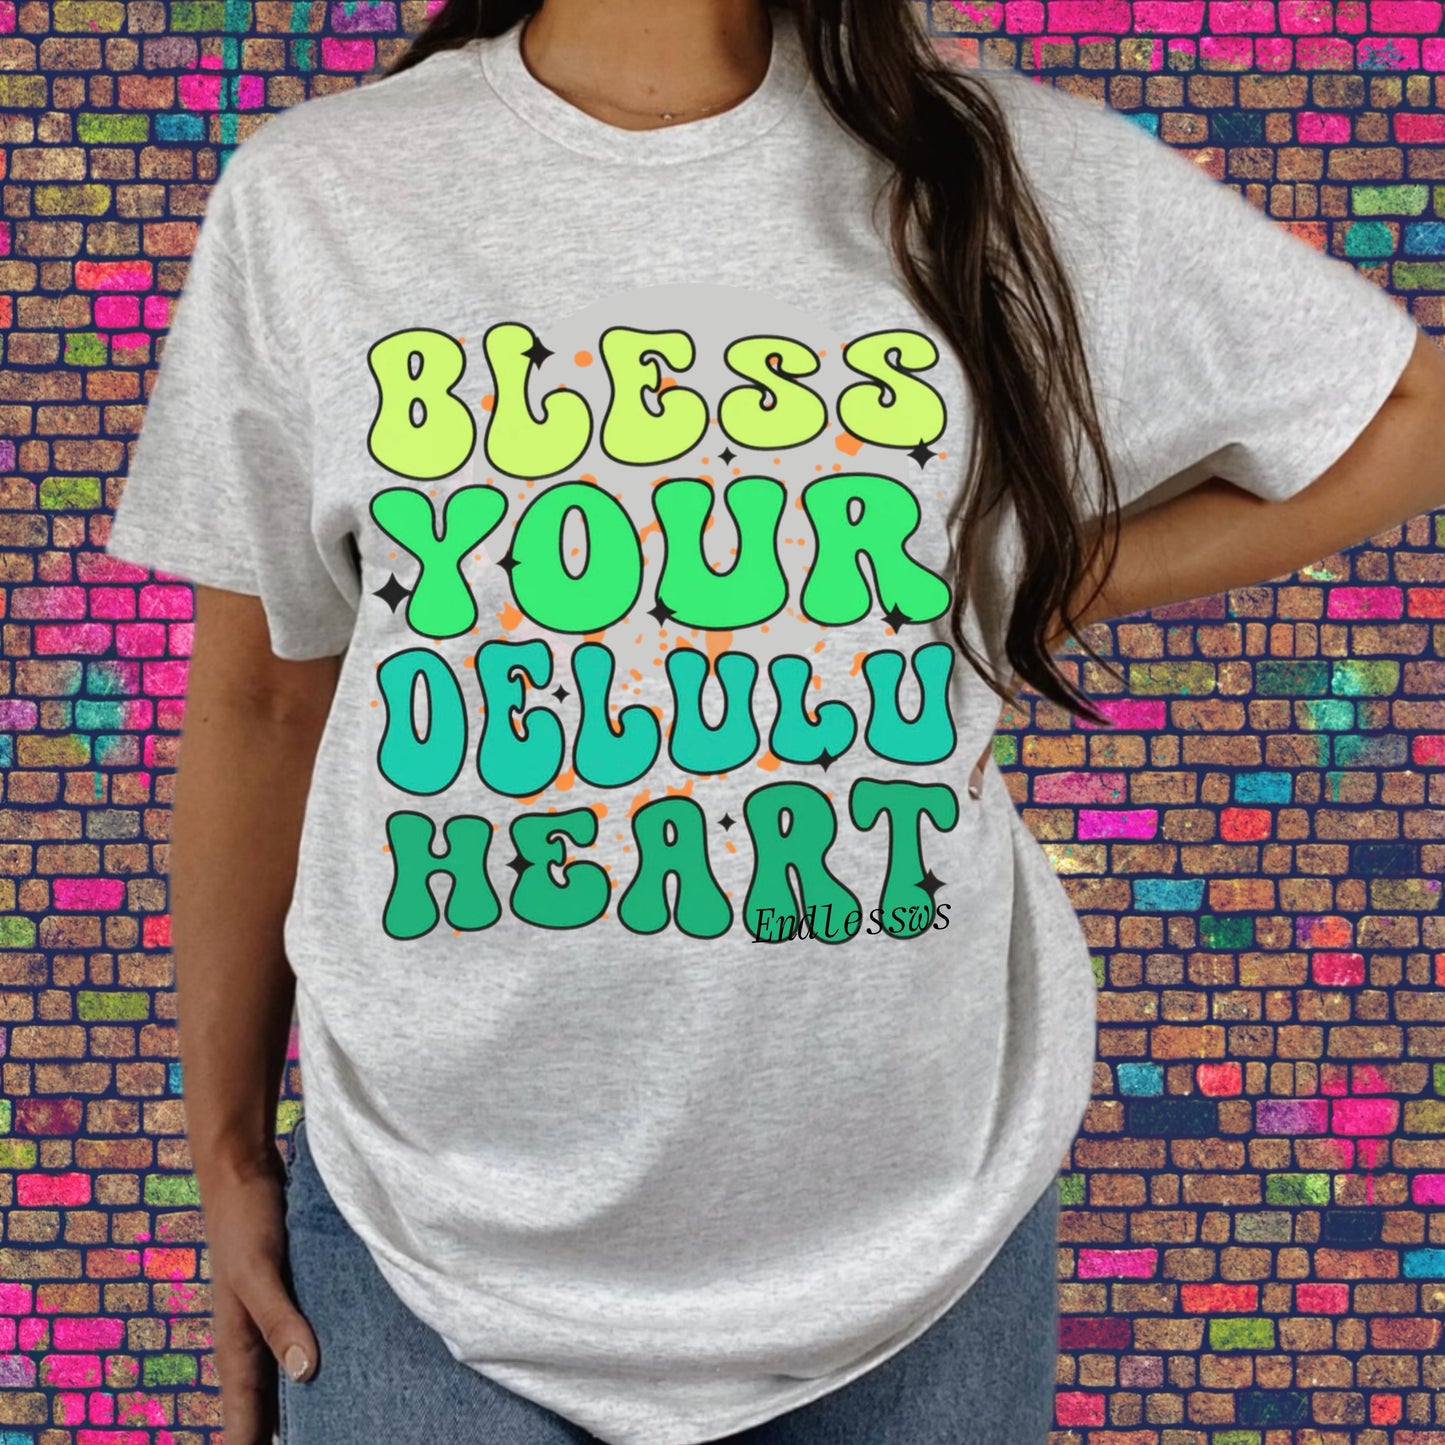 Bless your delulu heart tee